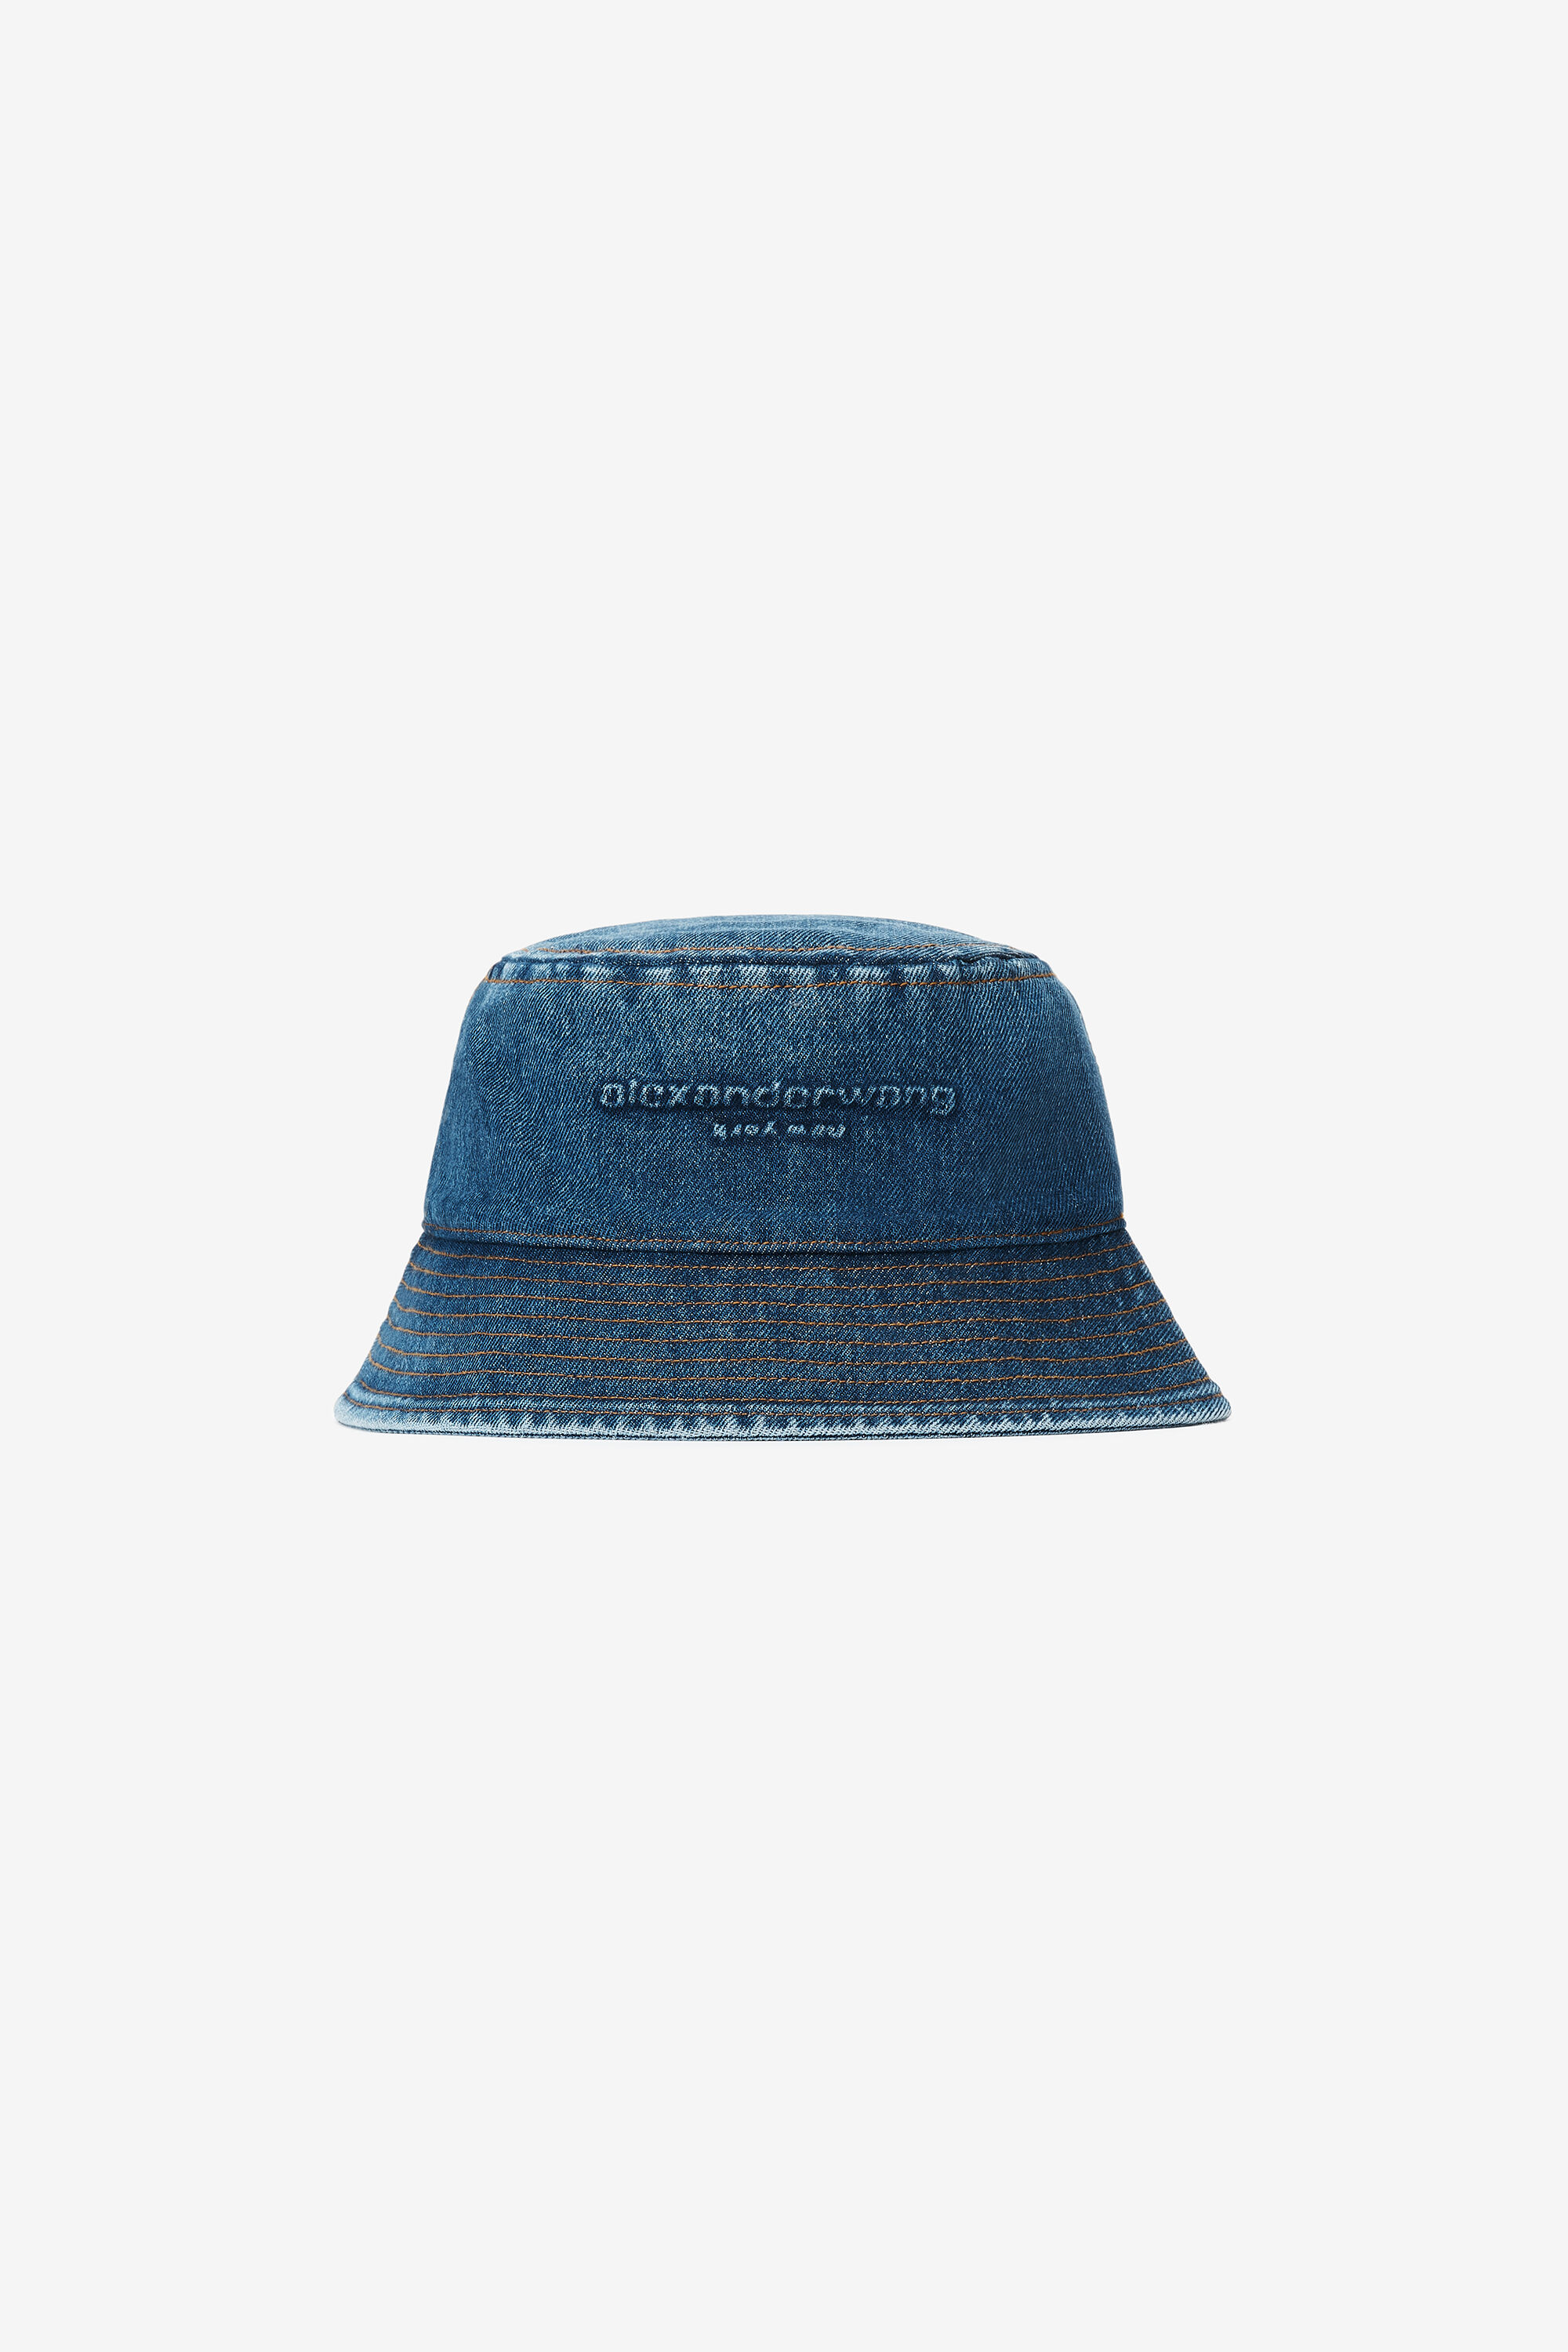 alexanderwang embossed bucket hat in denim DEEP BLUE 